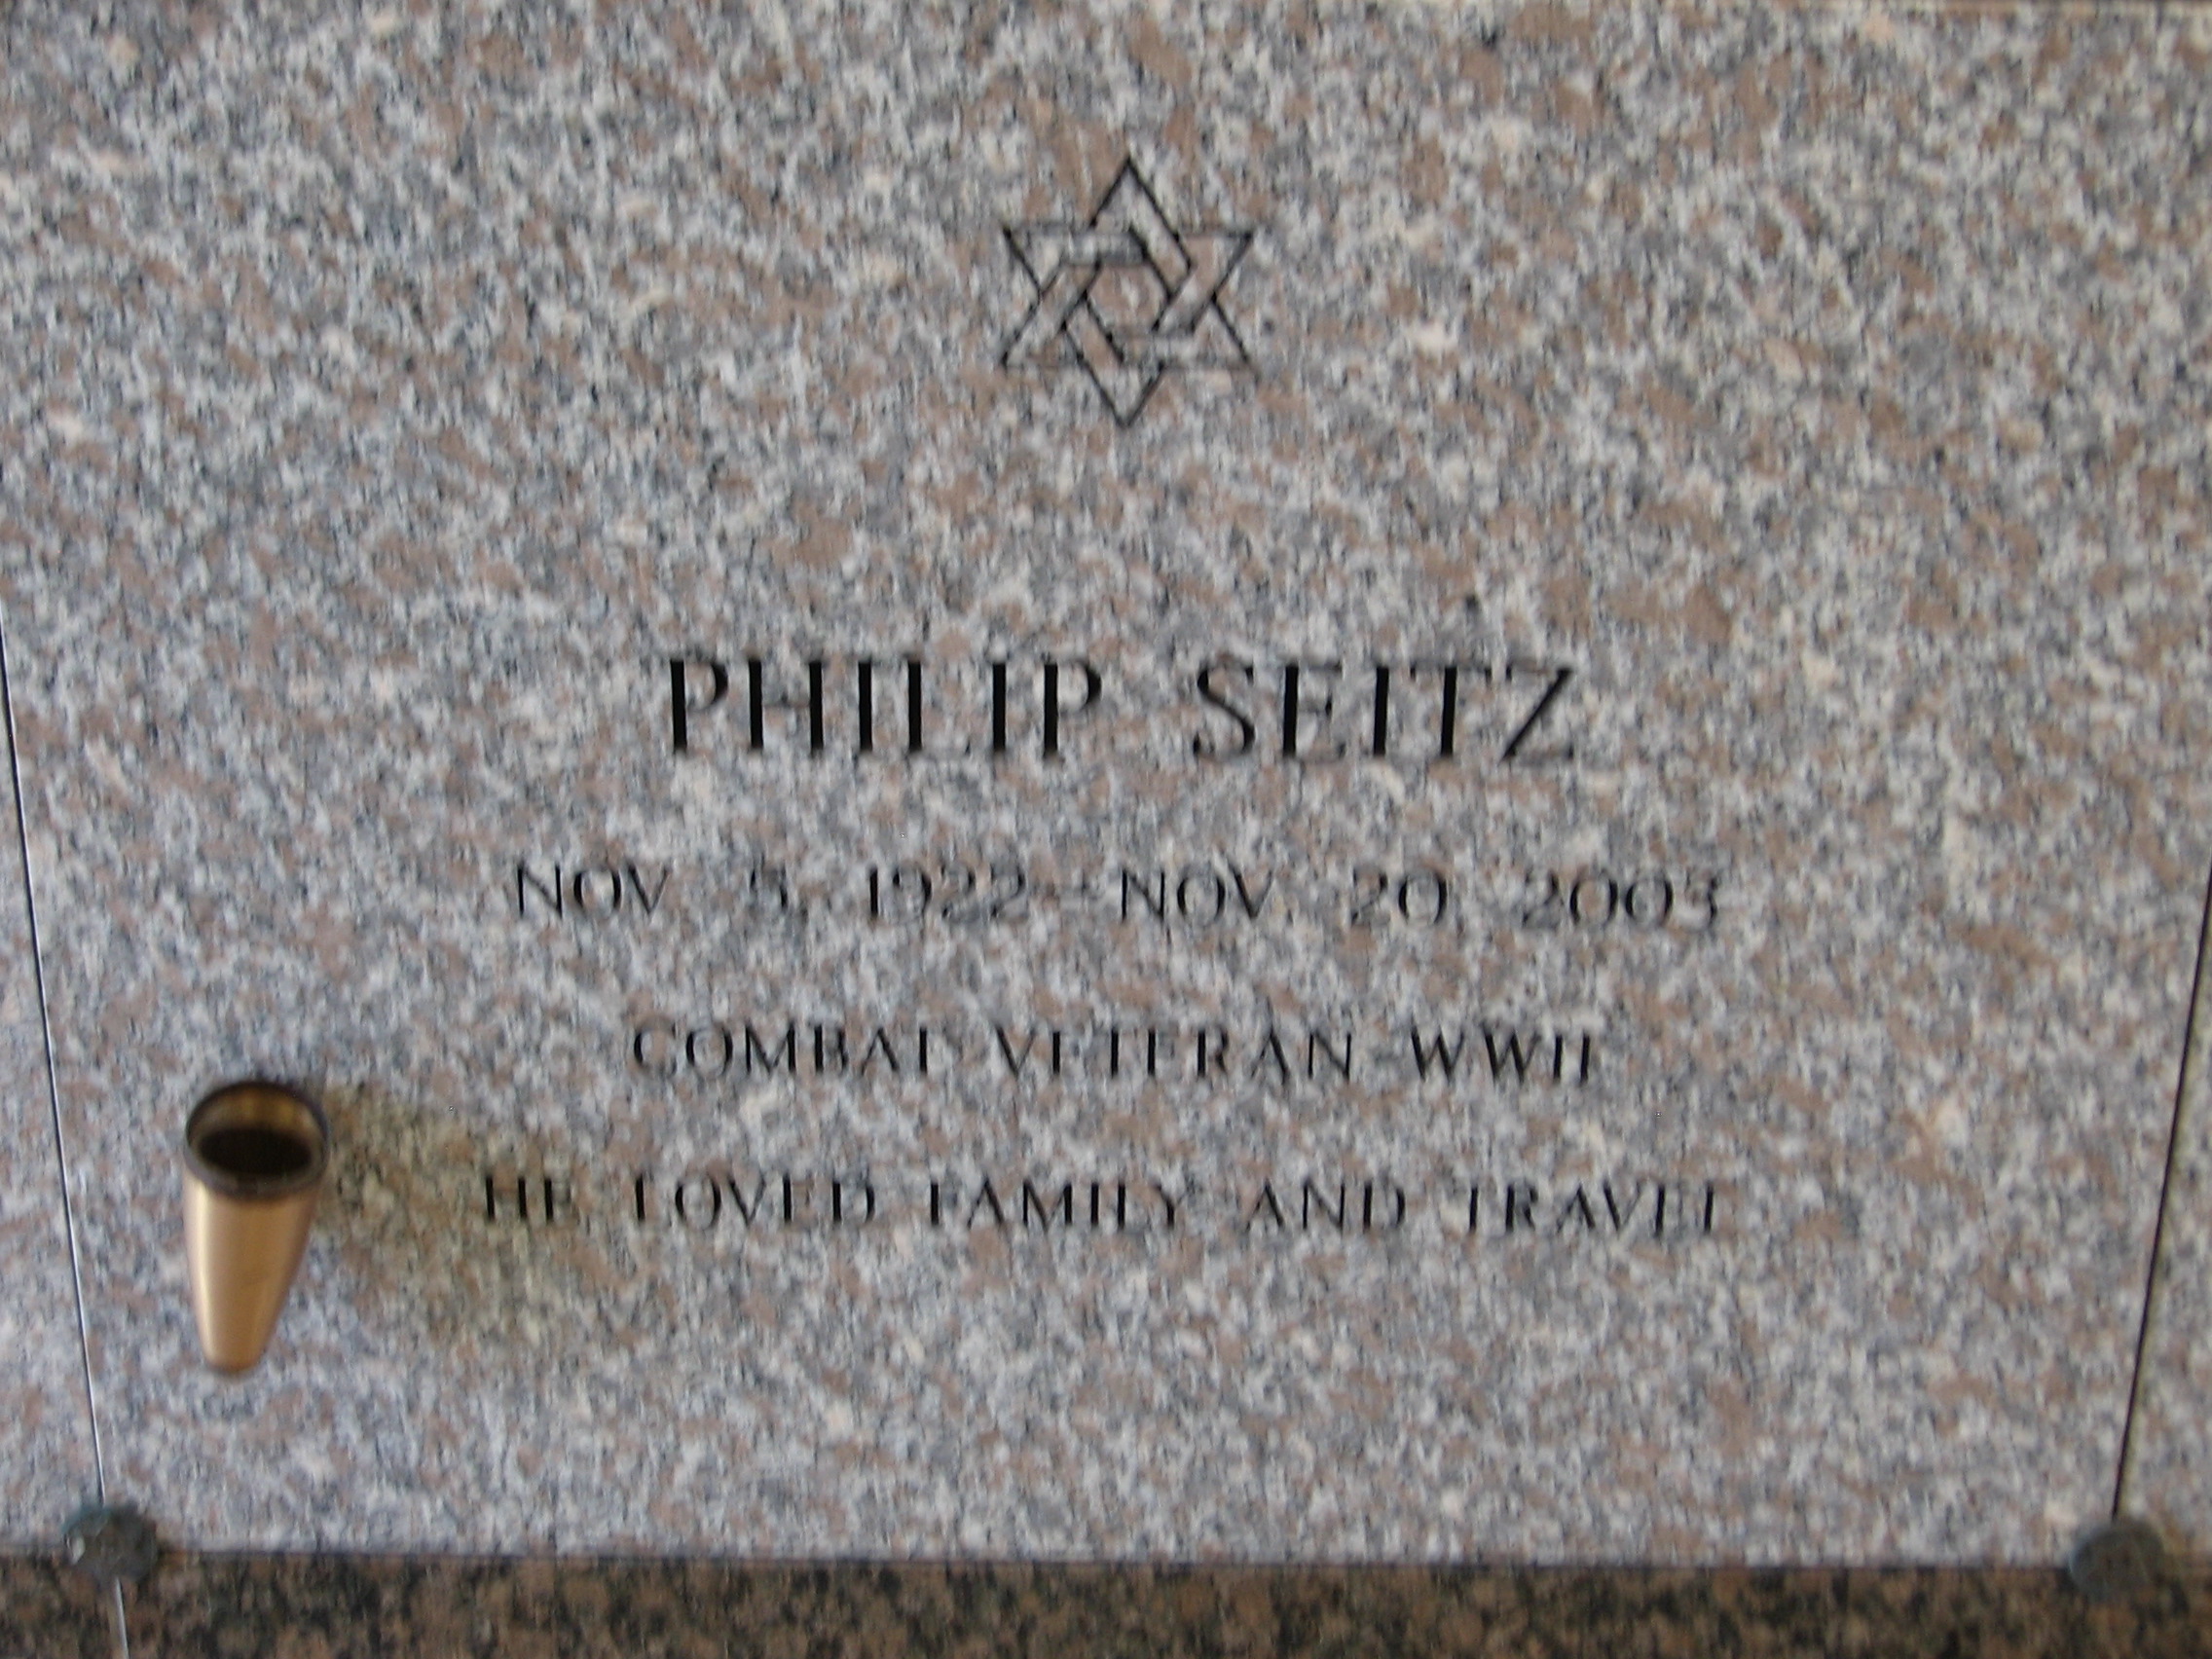 Philip Seitz